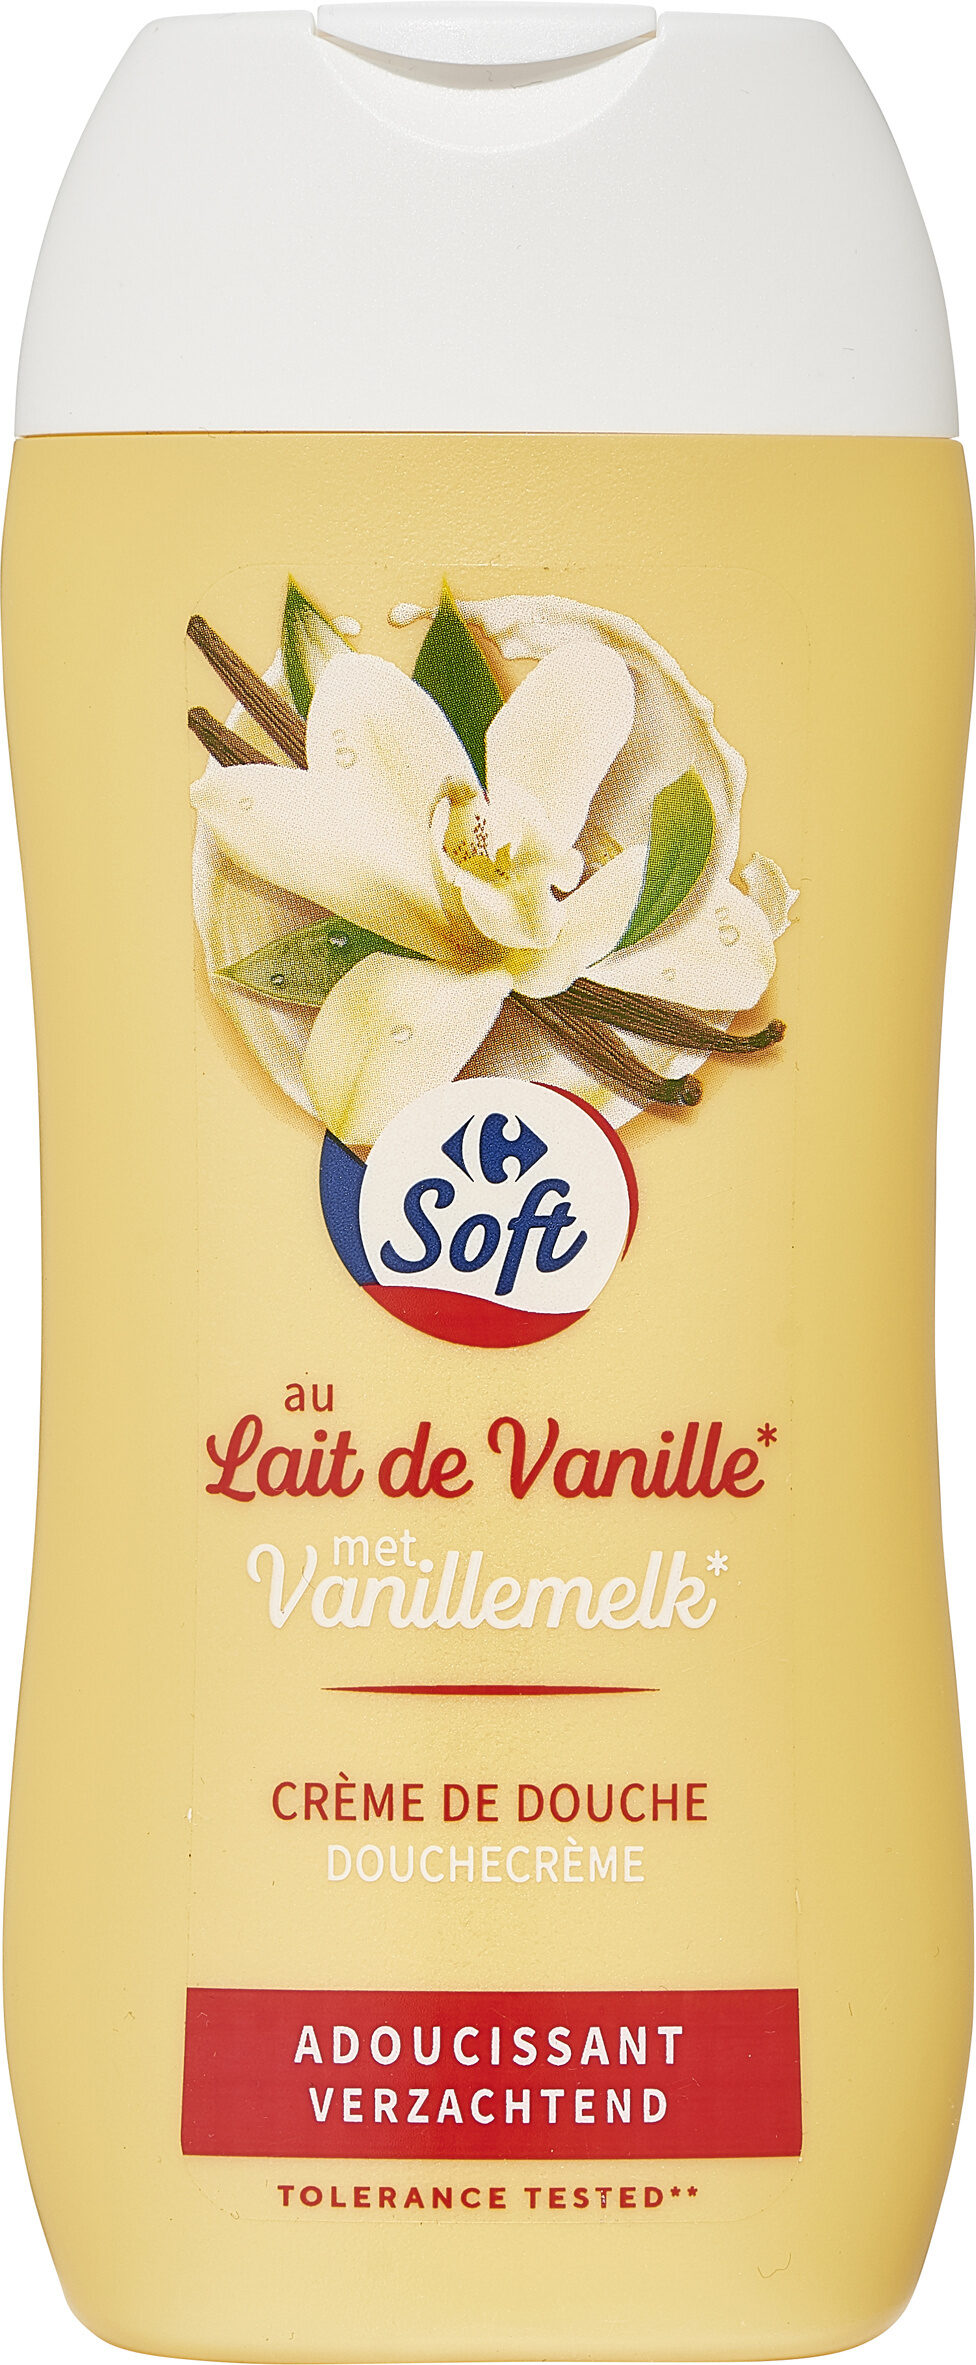 Crème de douche Lait de vanille et miel adoucissante - Produit - fr